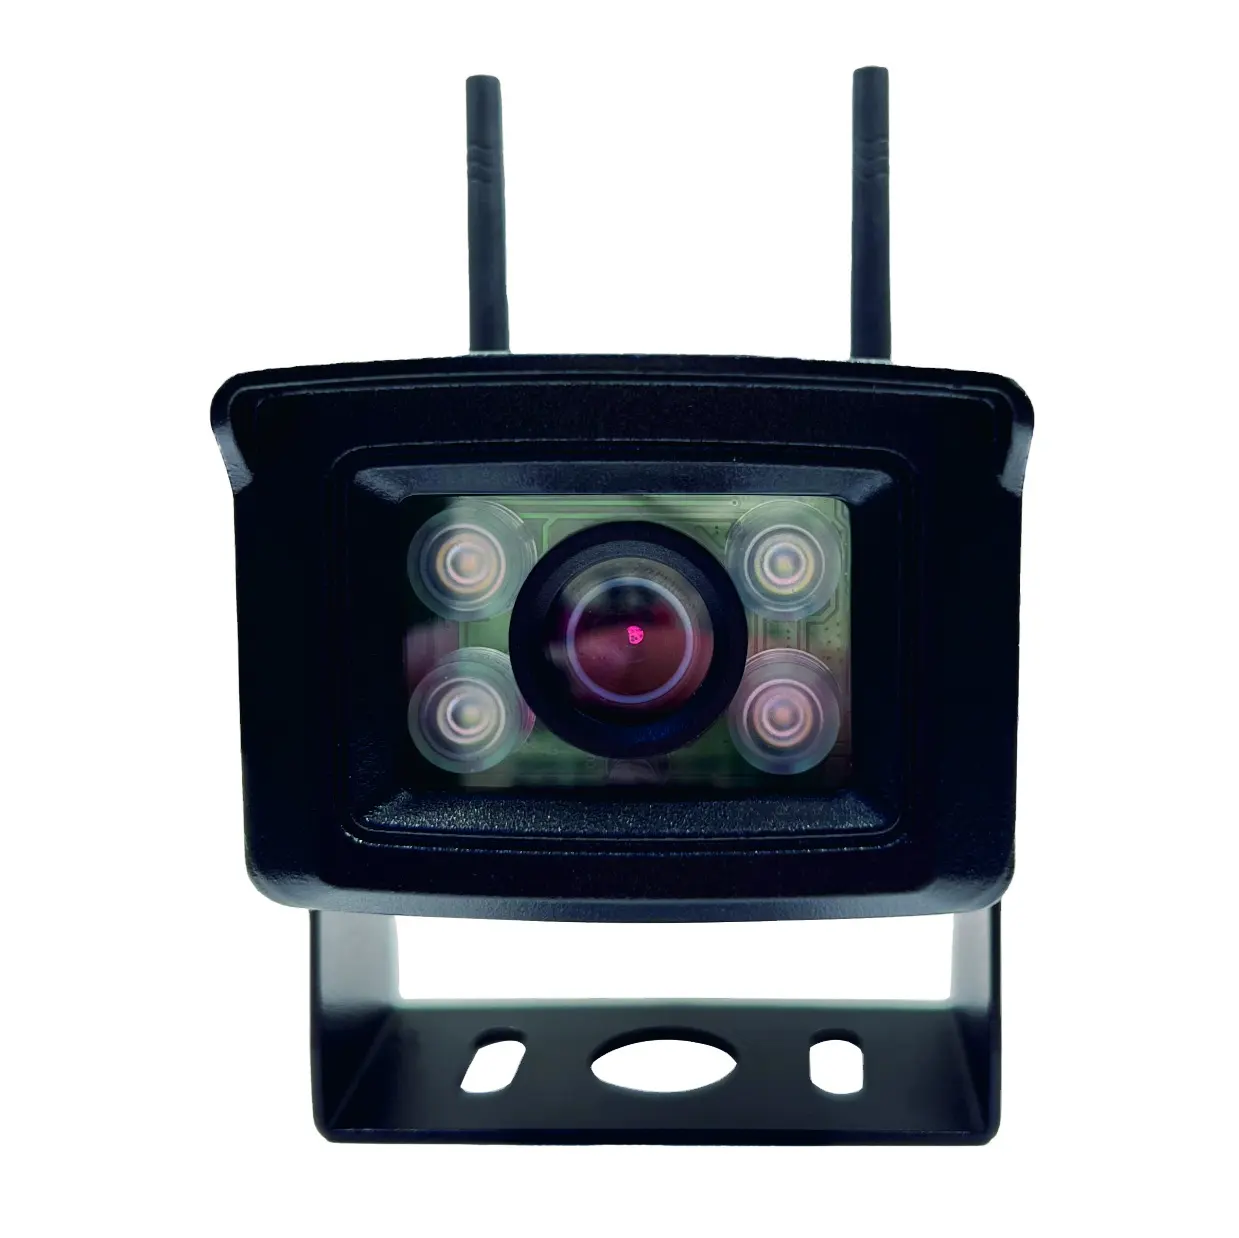 4G tarjeta SIM seguridad vigilancia inalámbrica vehículo detección de movimiento impermeable nube visión nocturna cámara digital HD